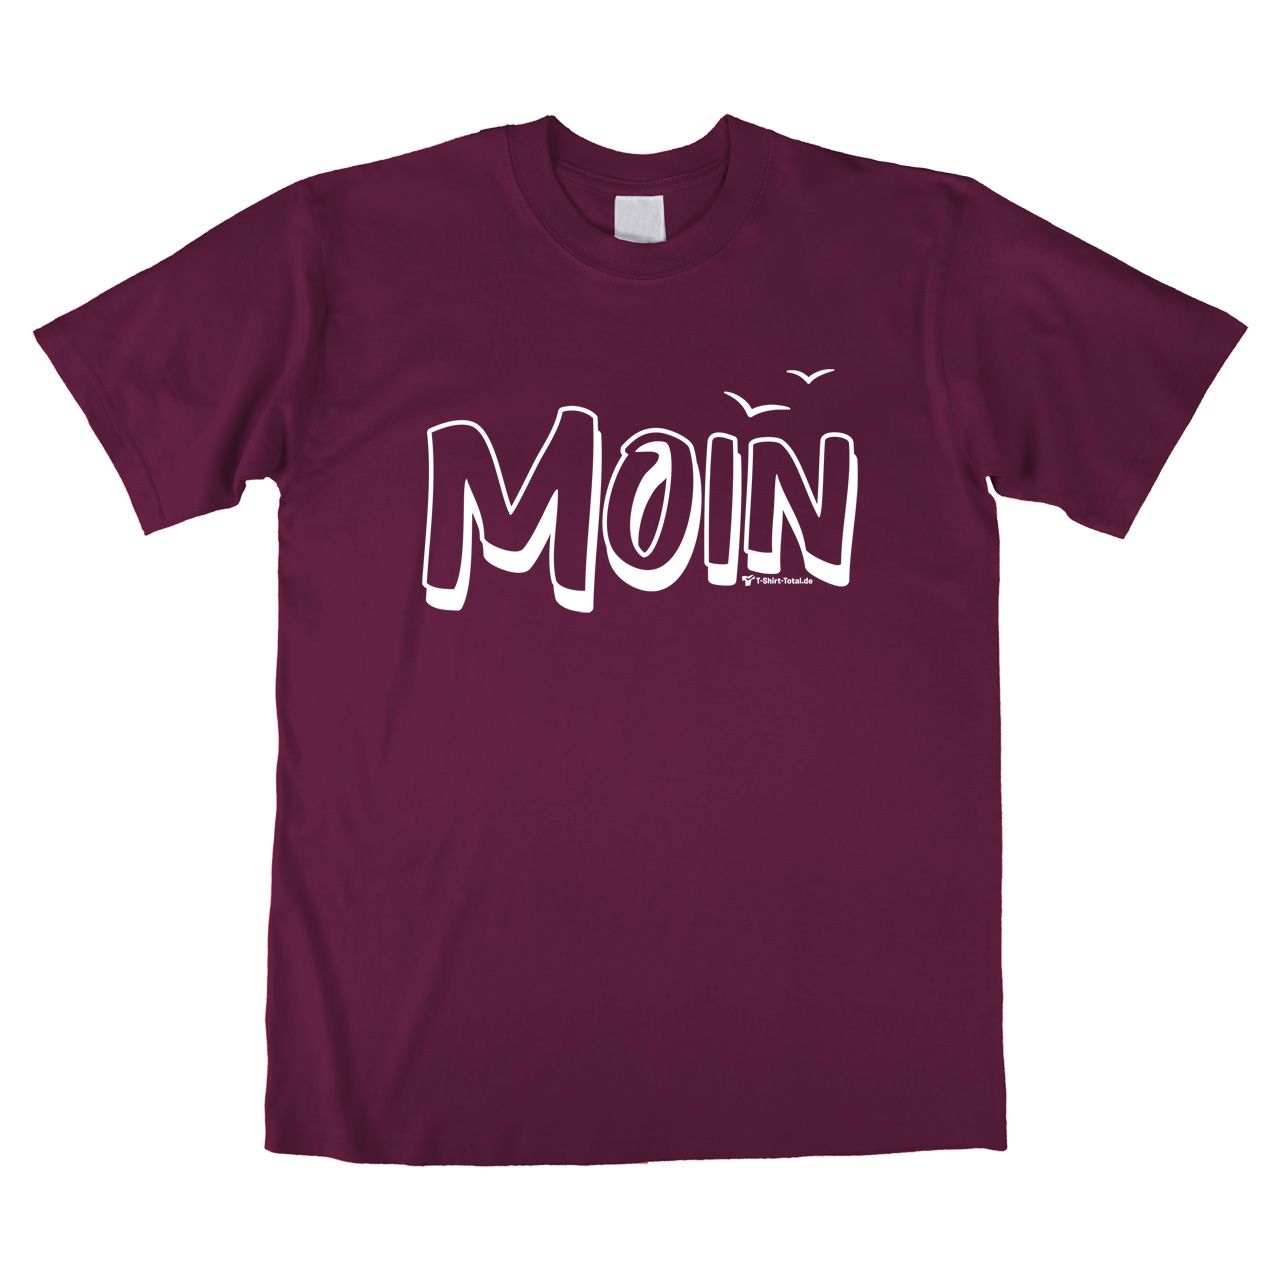 Moin mit Möwen Unisex T-Shirt bordeaux Large